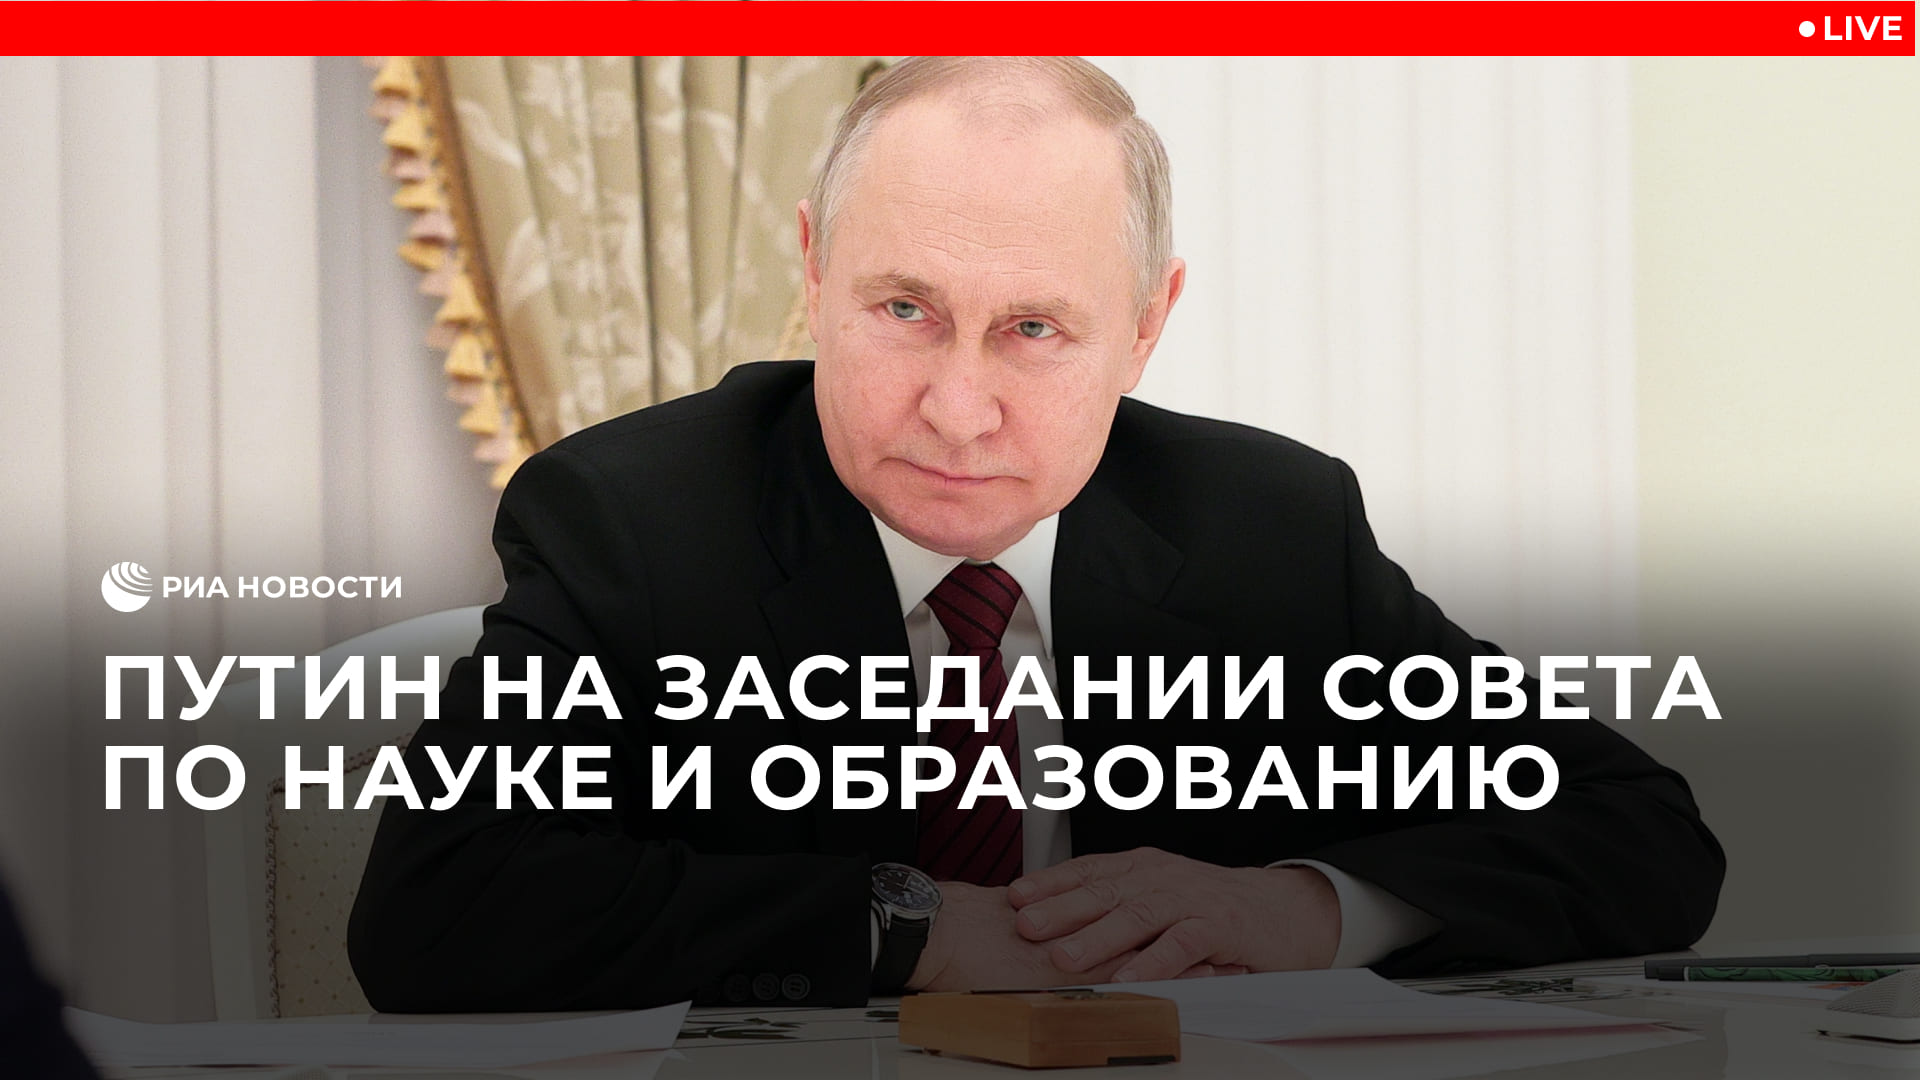 Путин проводит заседание Совета по науке и образованию